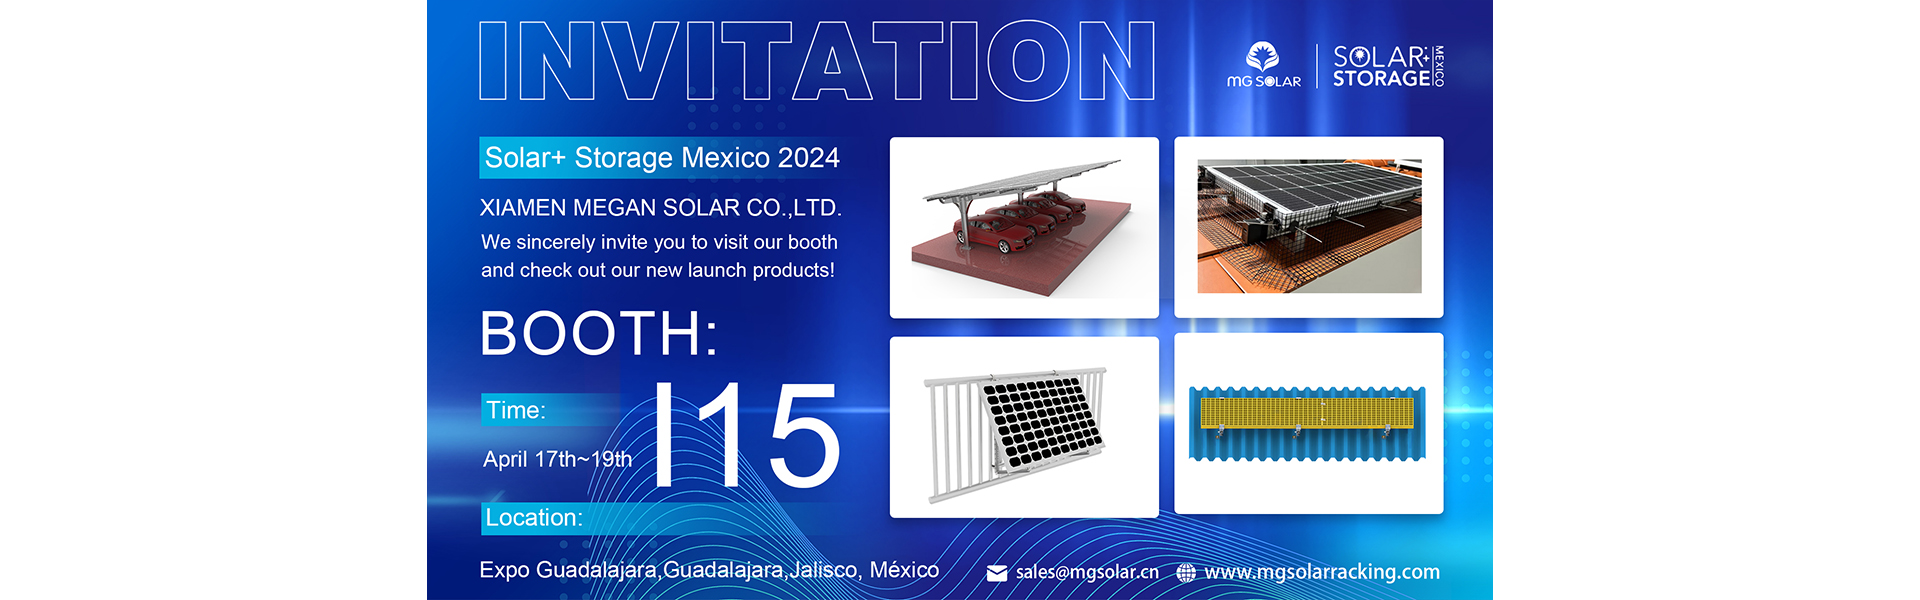 Solar+ Storage Mexico 2024